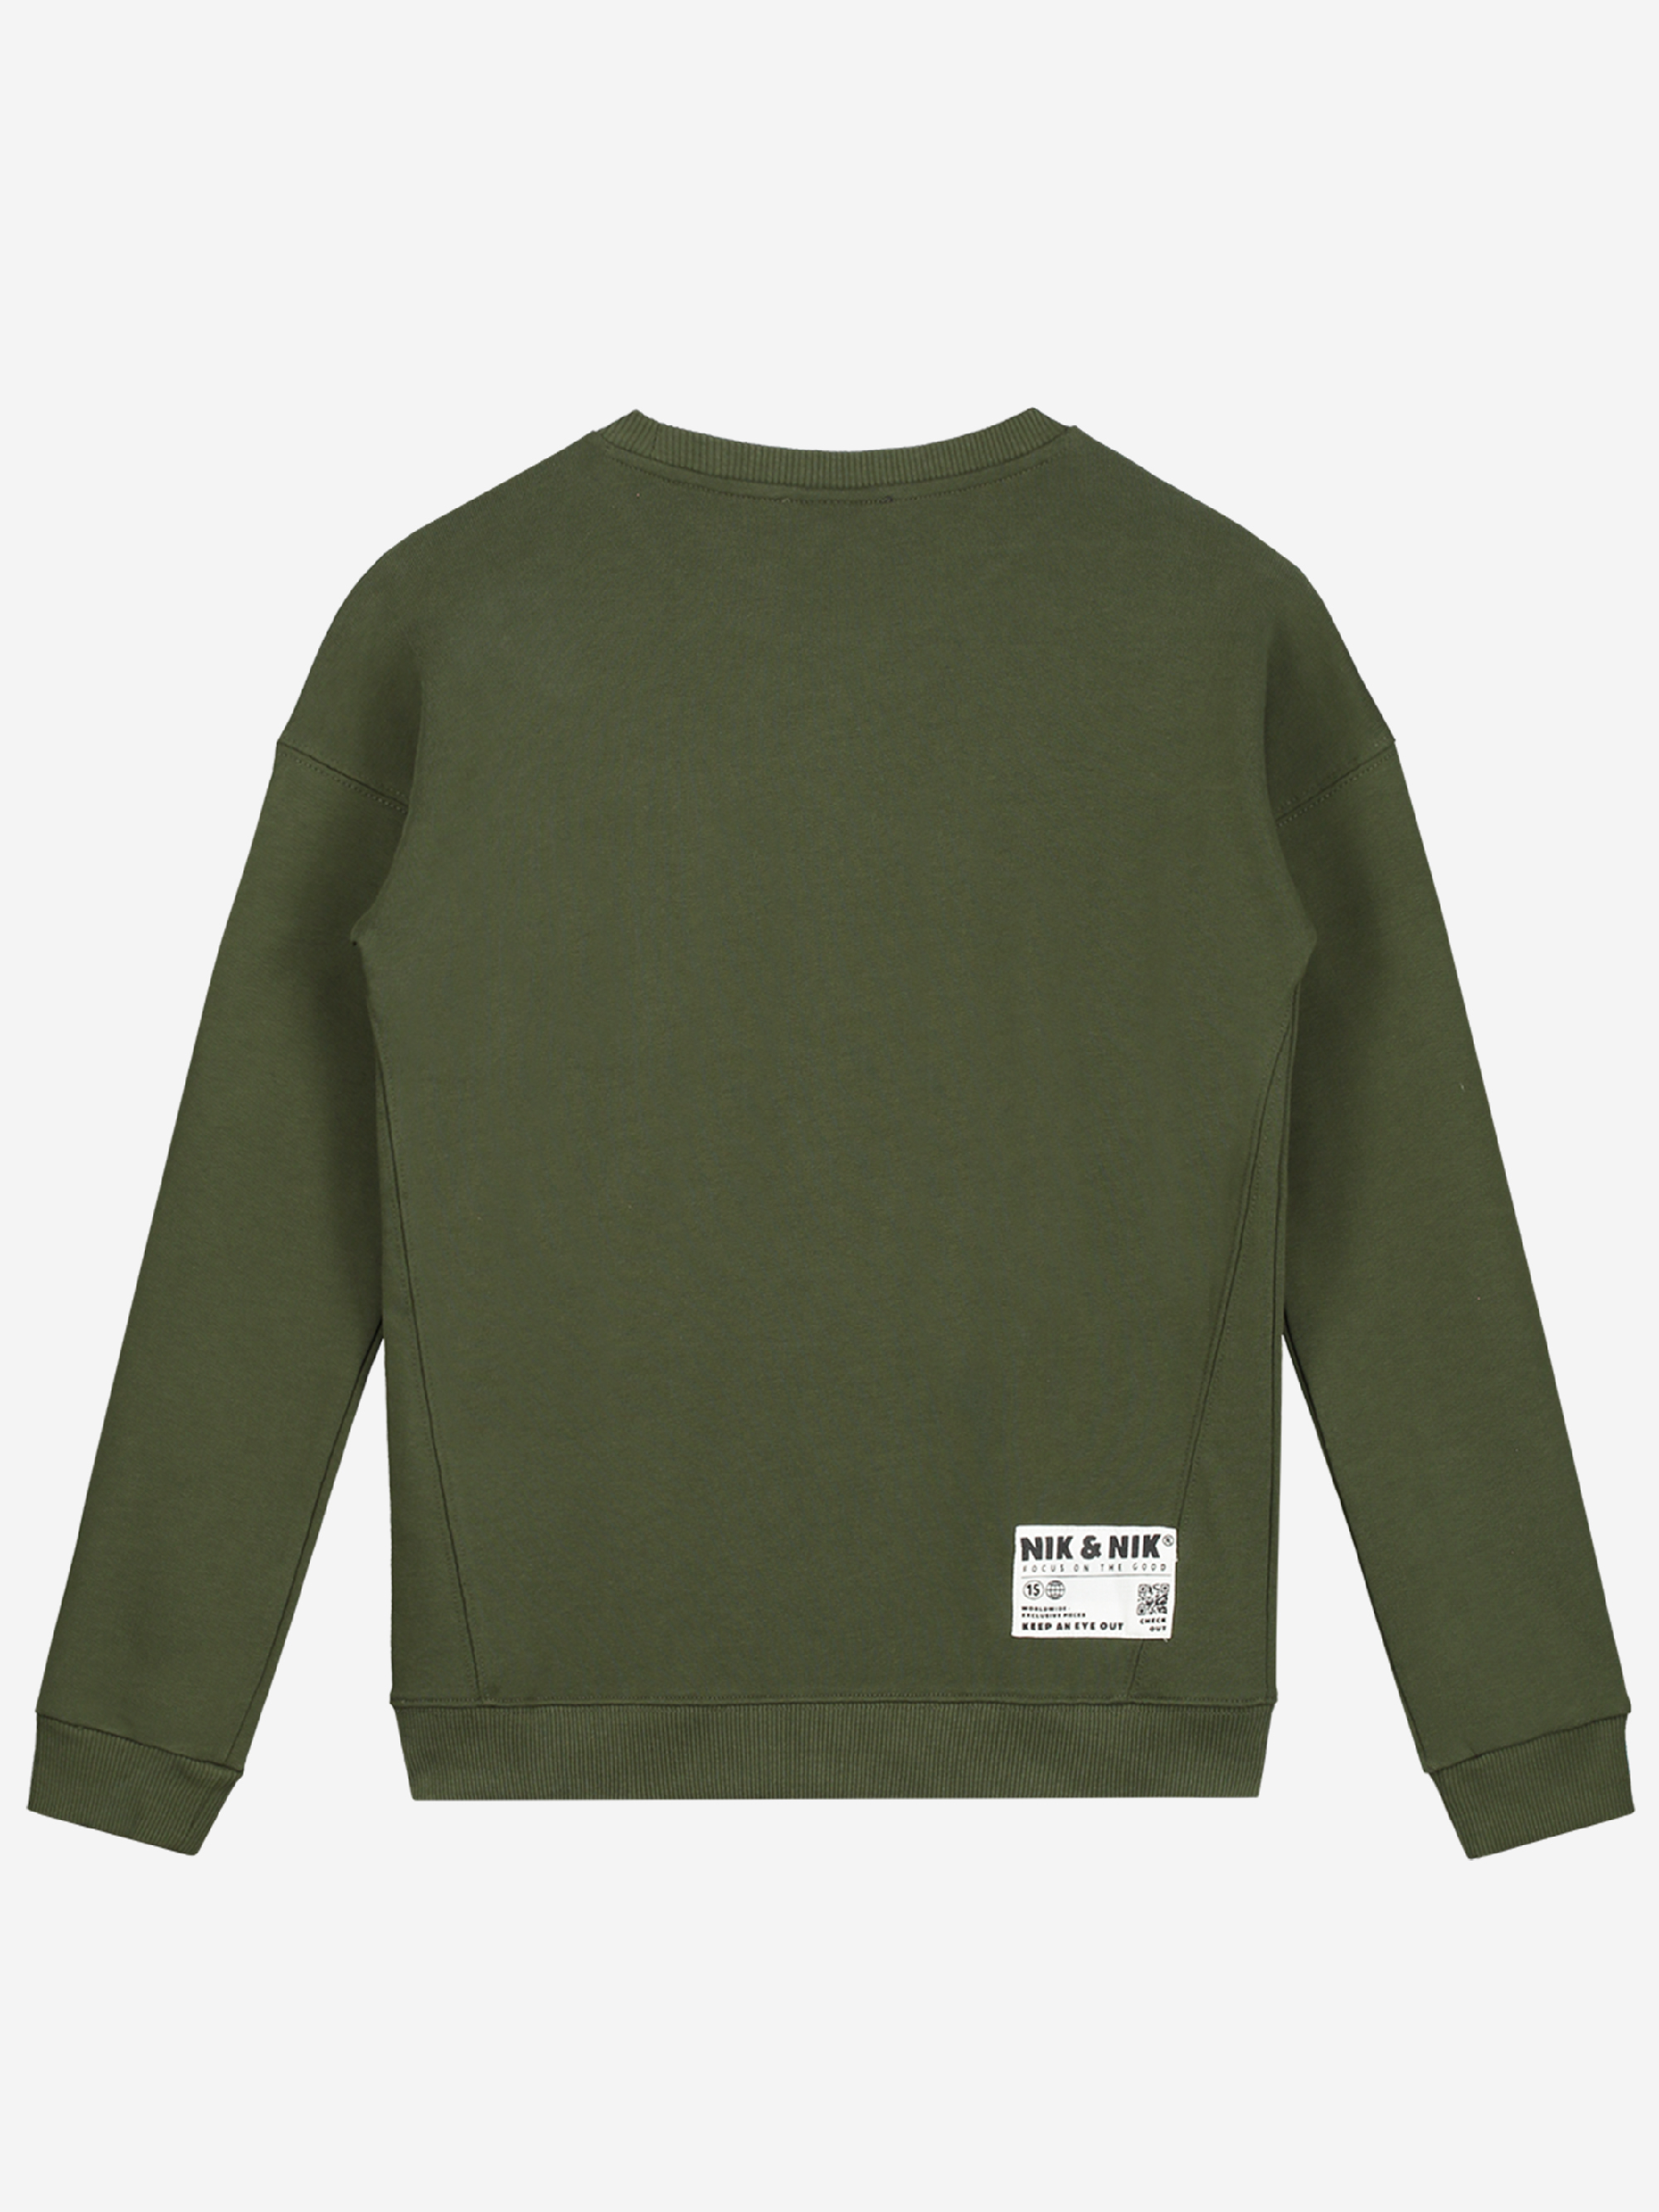 Jongens Milo Sweater van Nik & Nik in de kleur Dark Moss Green in maat 164.